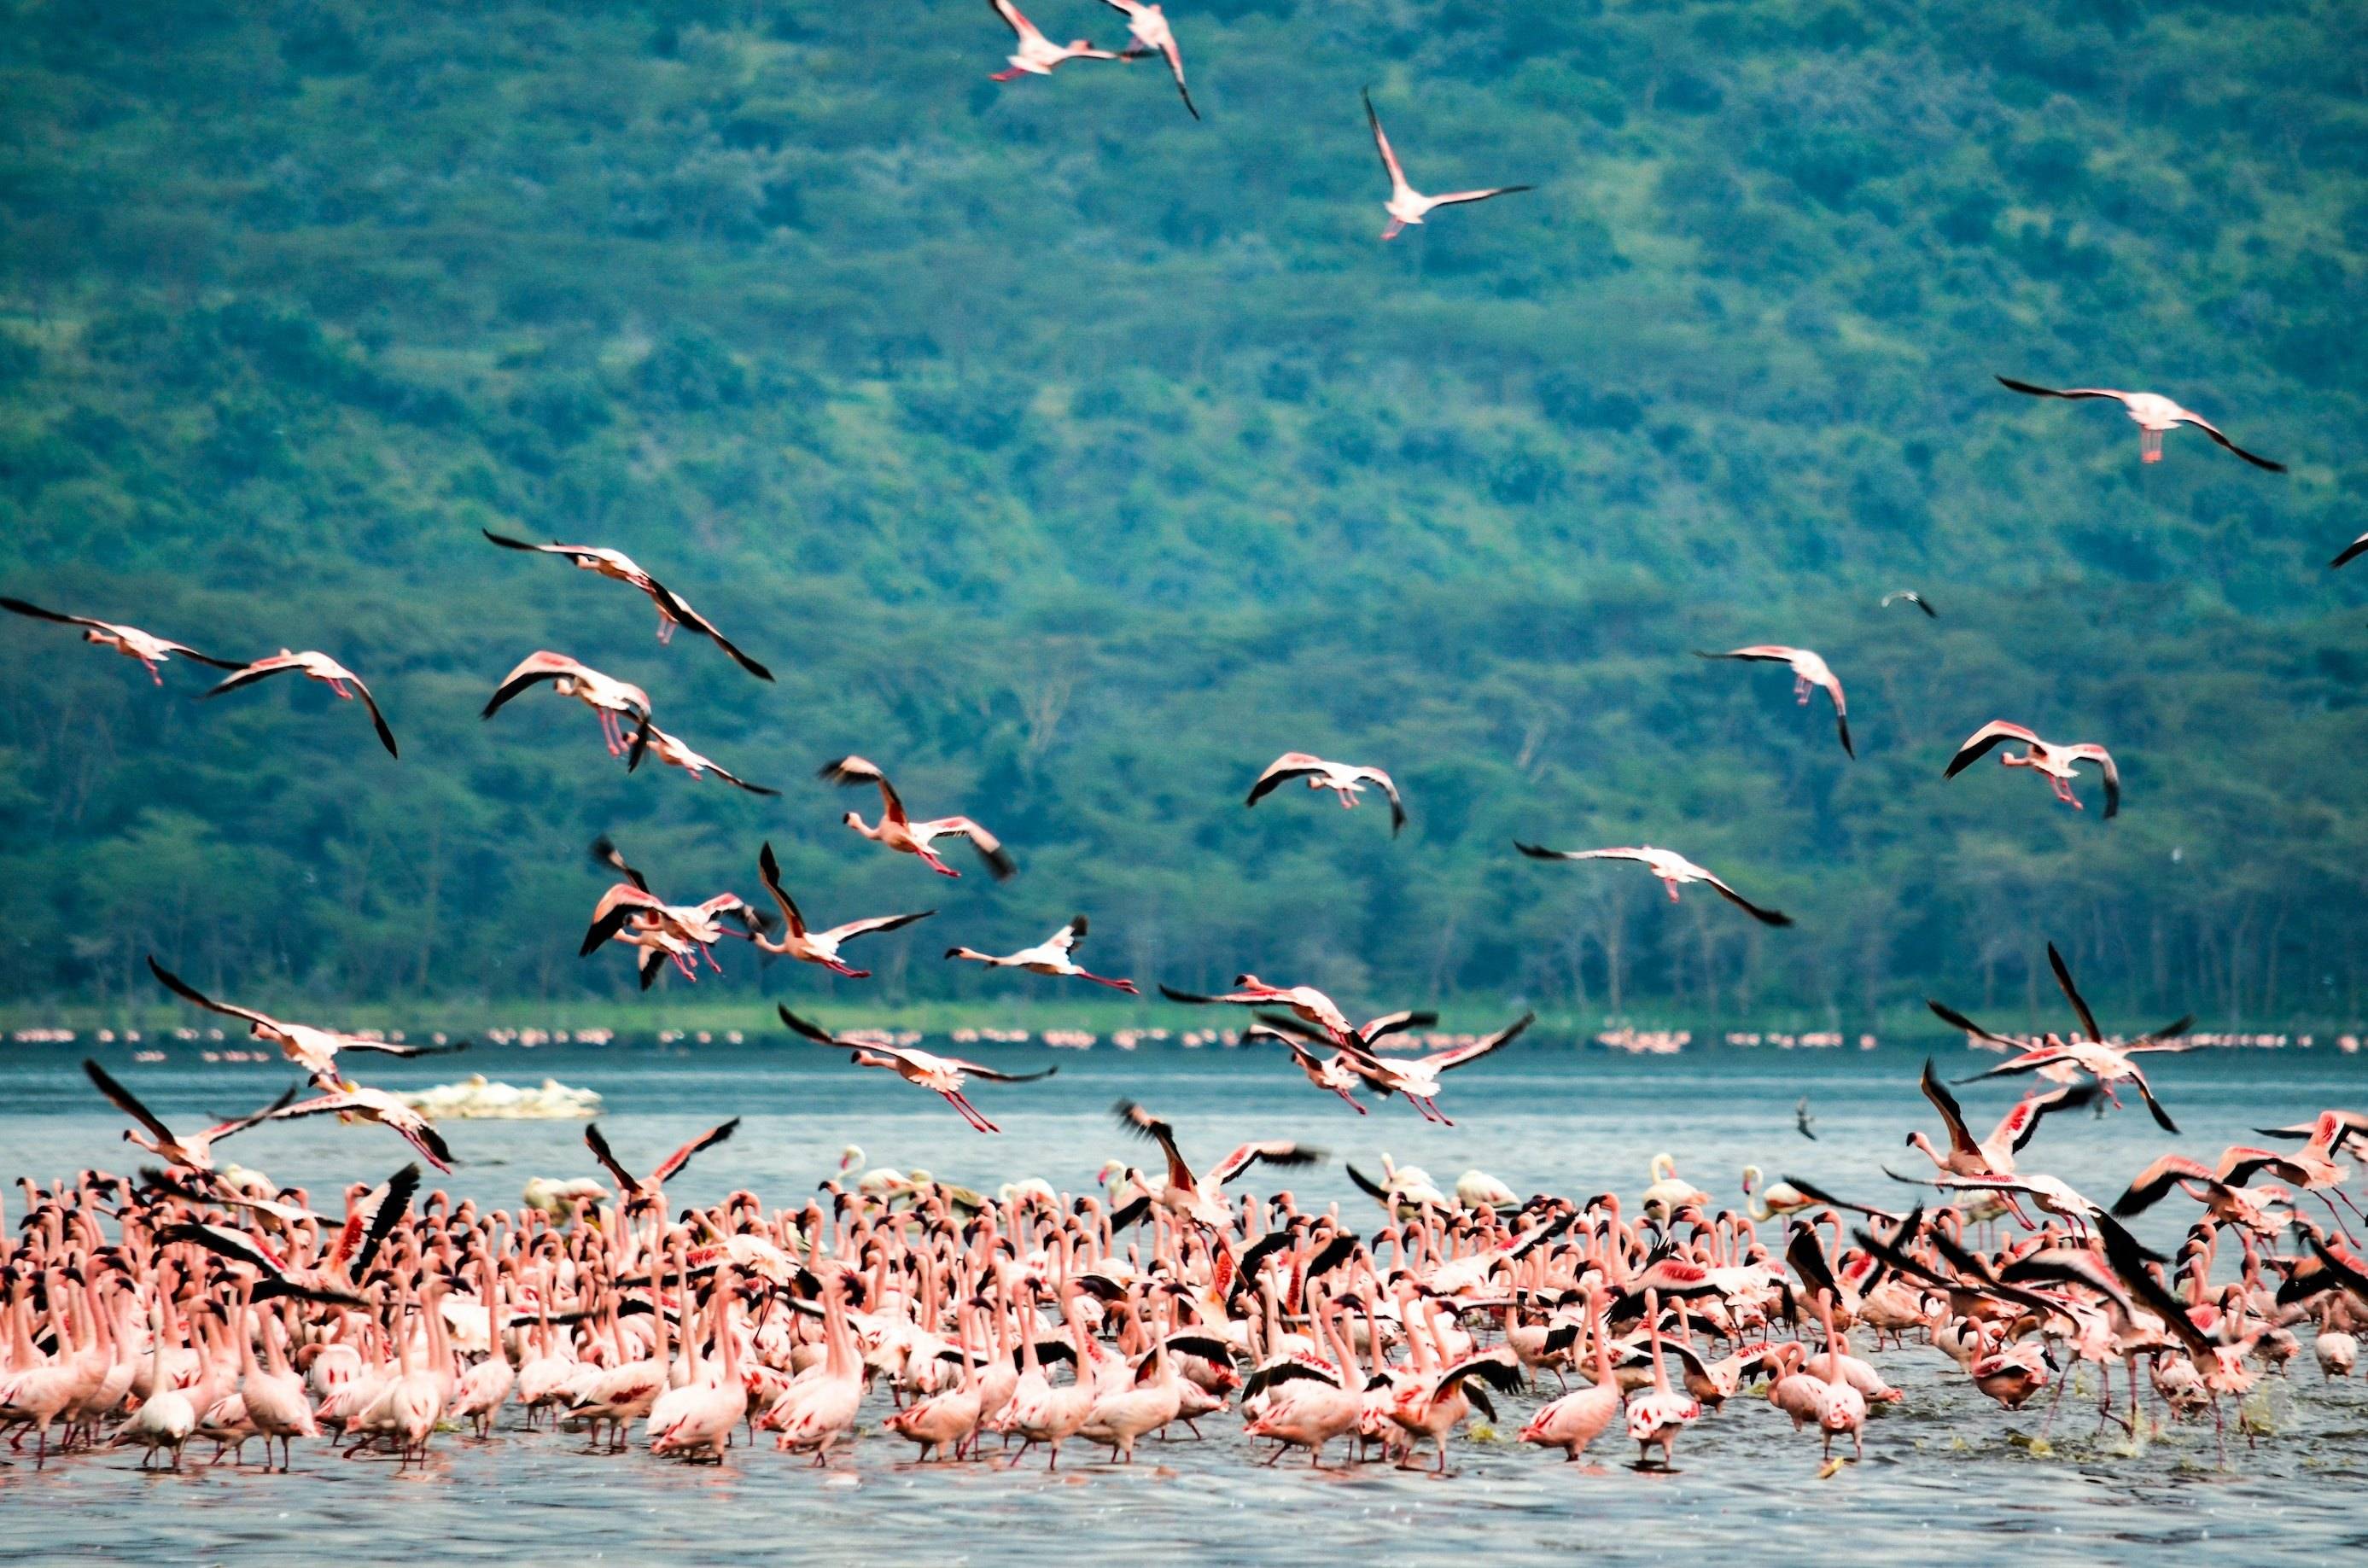 Descubre las aves del pantano y las hermosas mariposas en el lago Nakuru